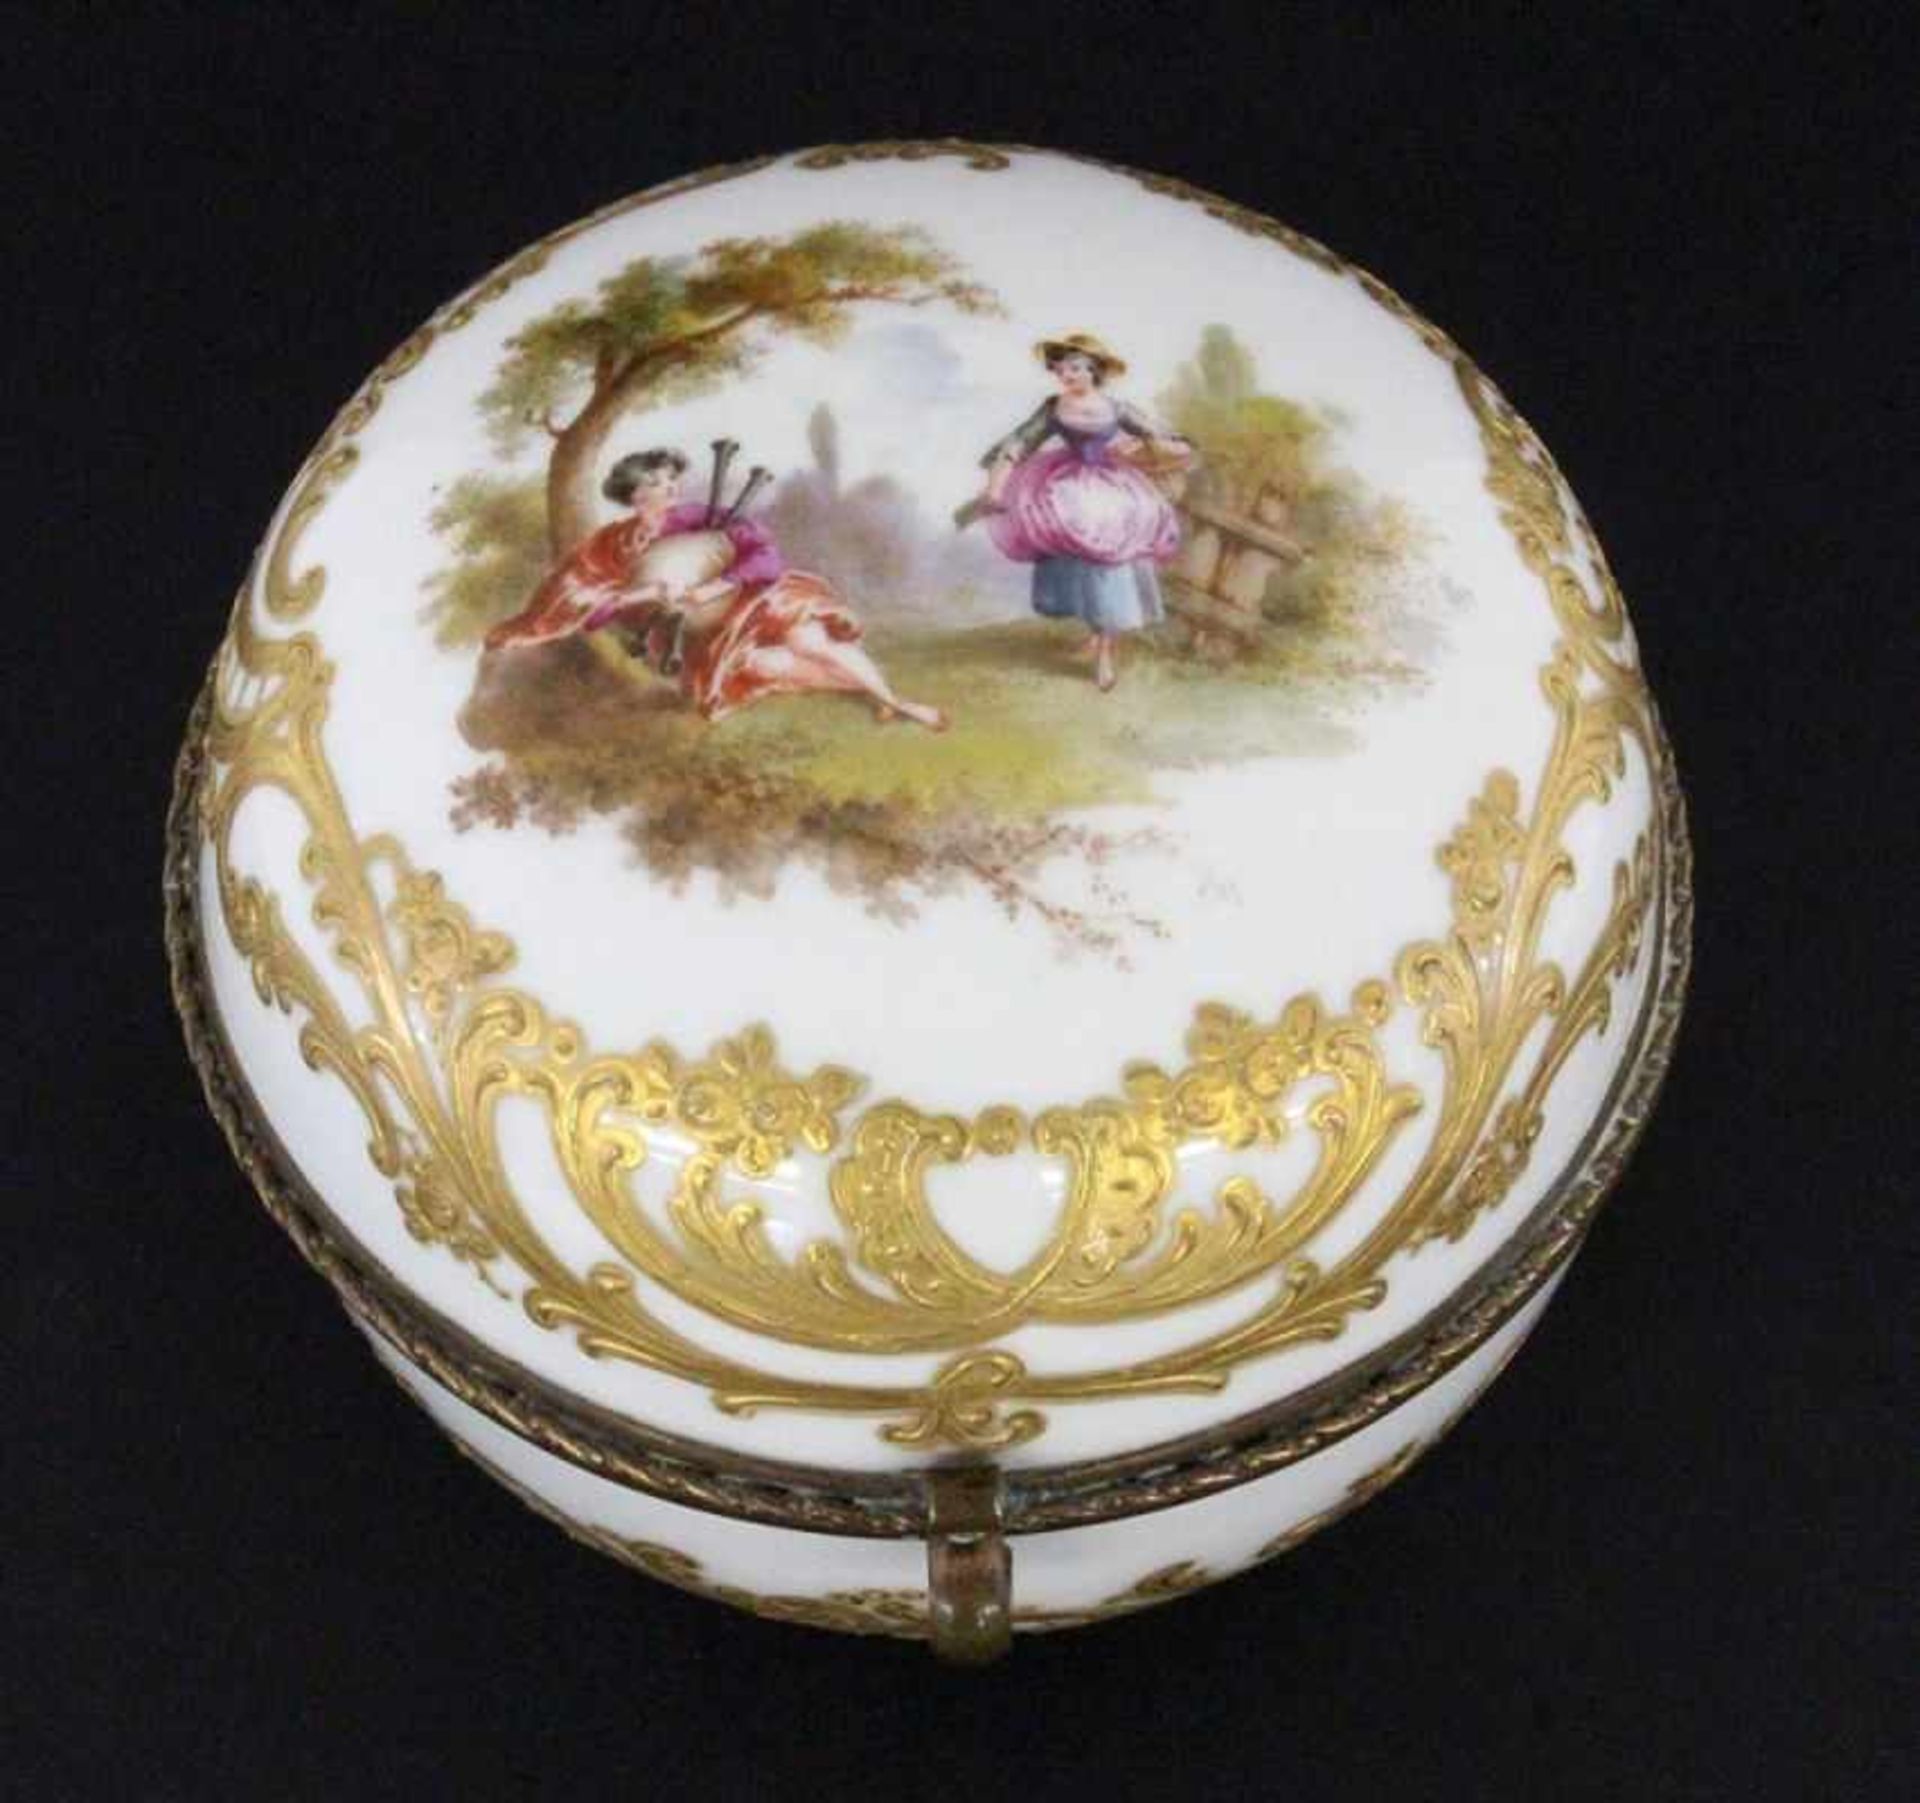 DECKELDOSEMeissen 1820-1840 Kugelform mit pastoser Goldstaffage und farbiger Schäferszene auf dem